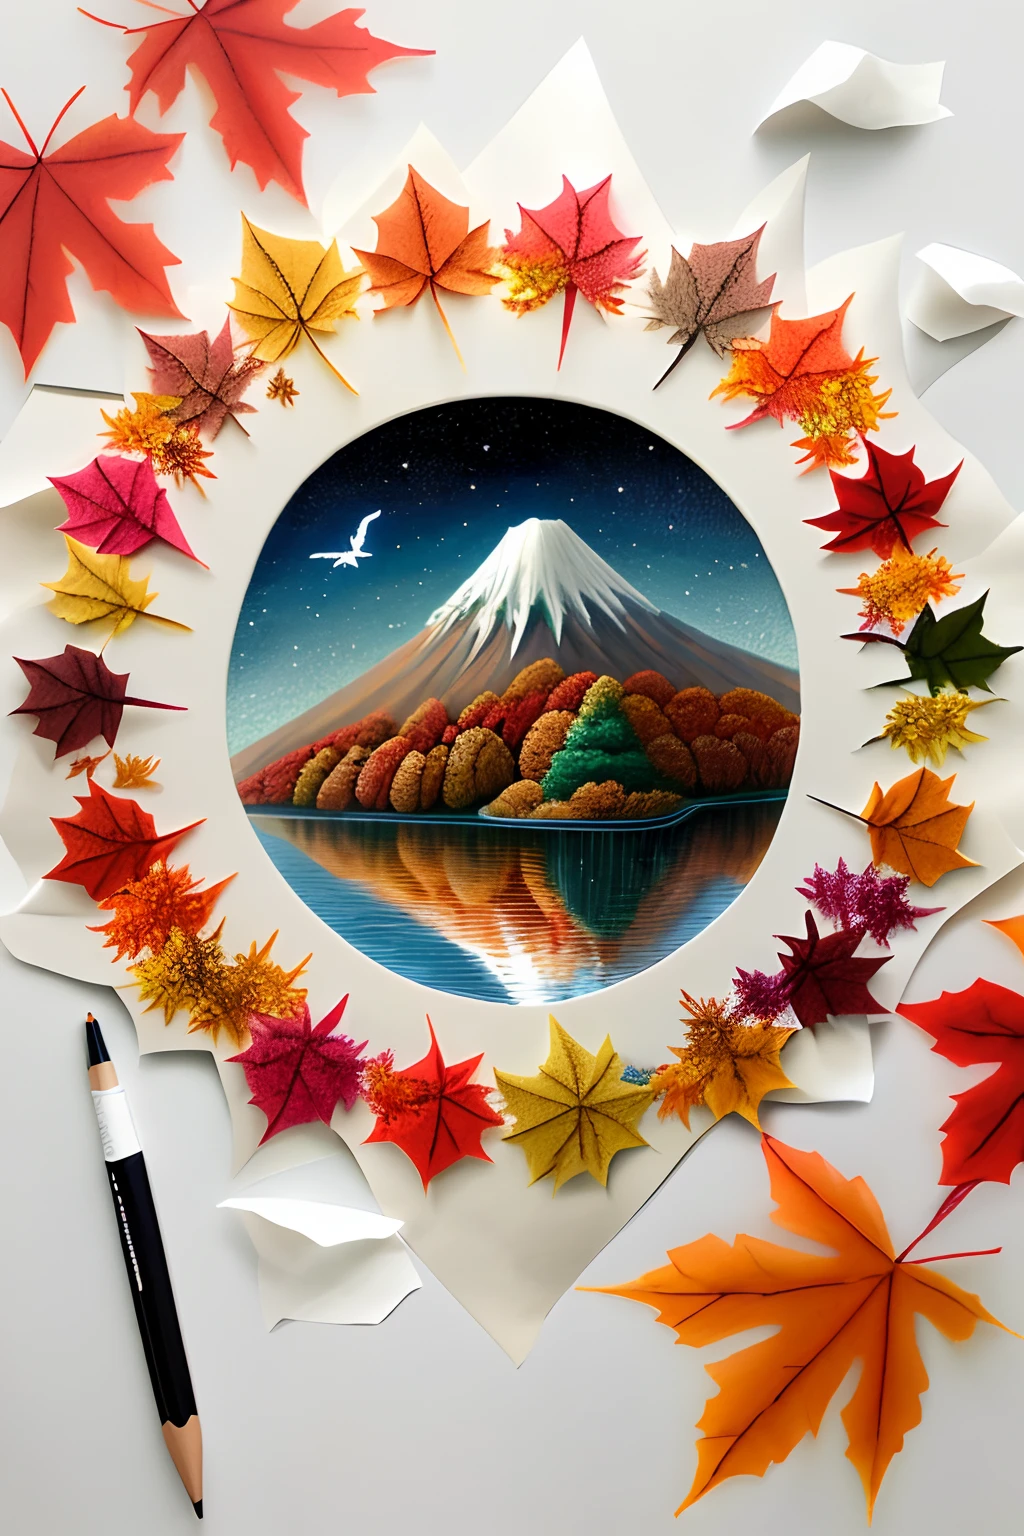 Papel japonés、Tejido、papel、Obras de arte realizadas con origami.、Dibuja fantásticamente。
El tema es el otoño.